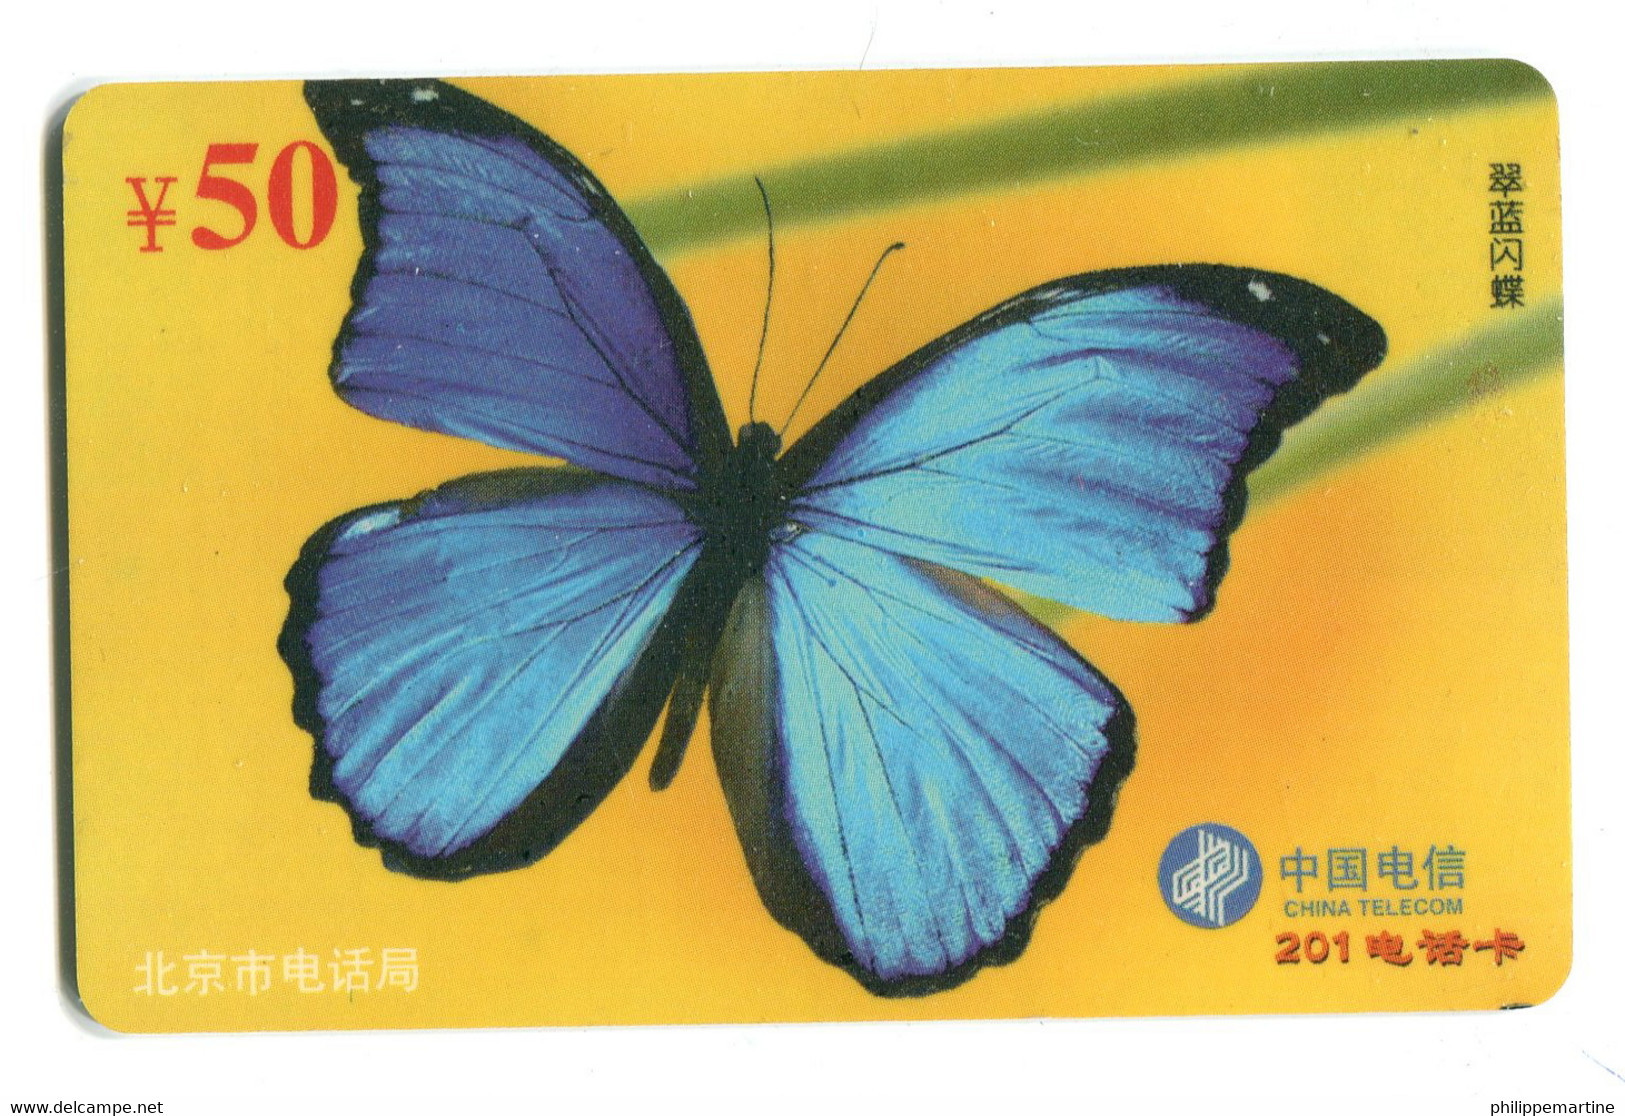 Télécarte China Télécom :  Papillon - Butterflies